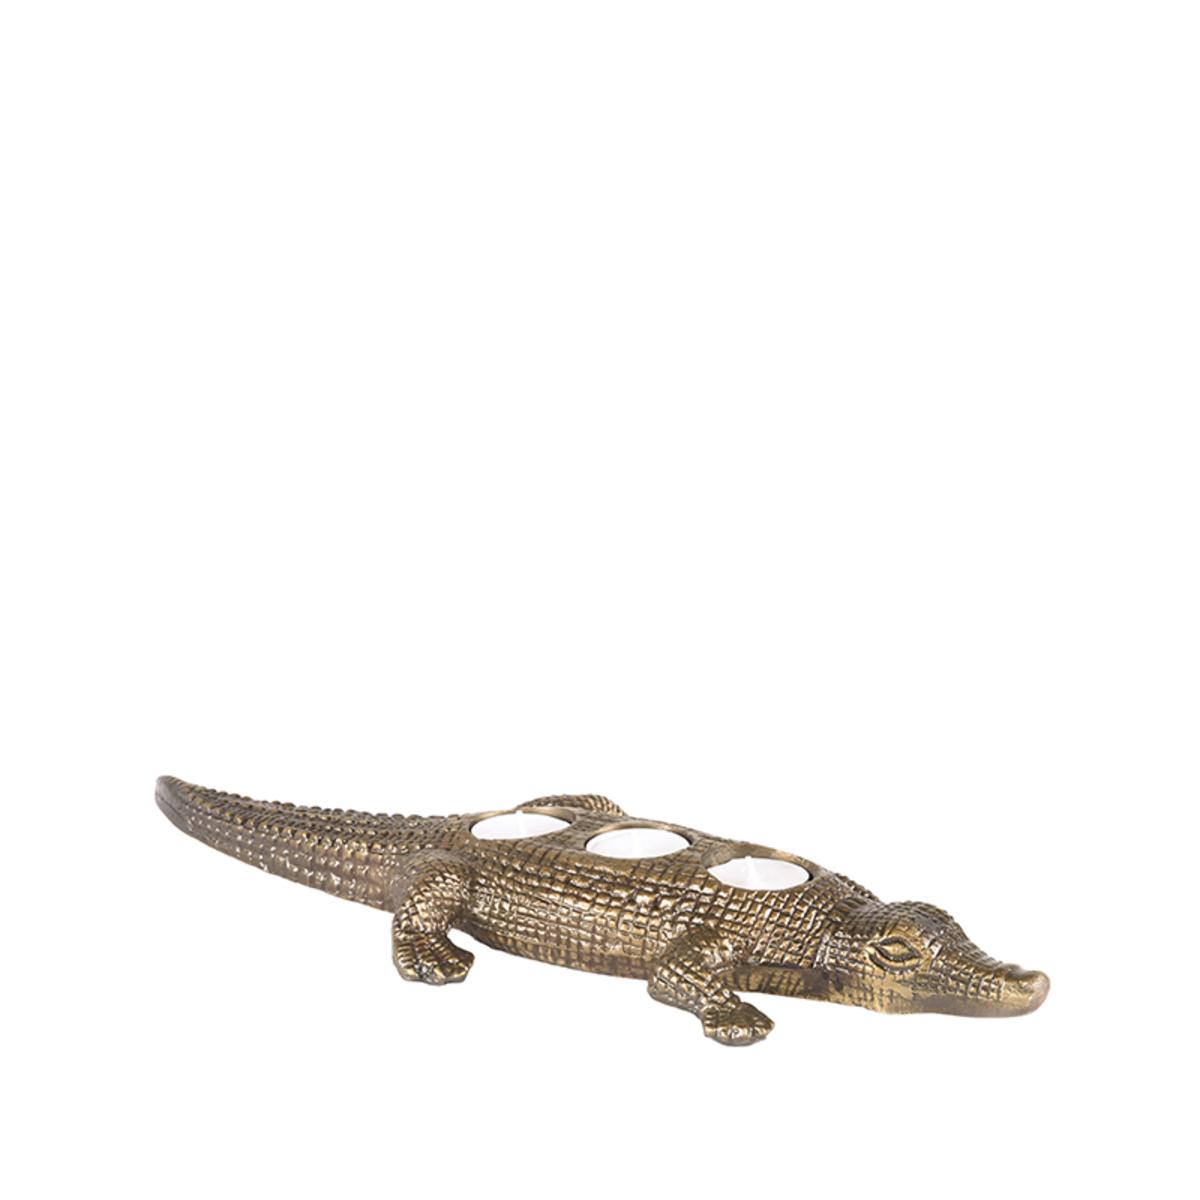  Krokodil - Antiek goud - Metaal afbeelding 1